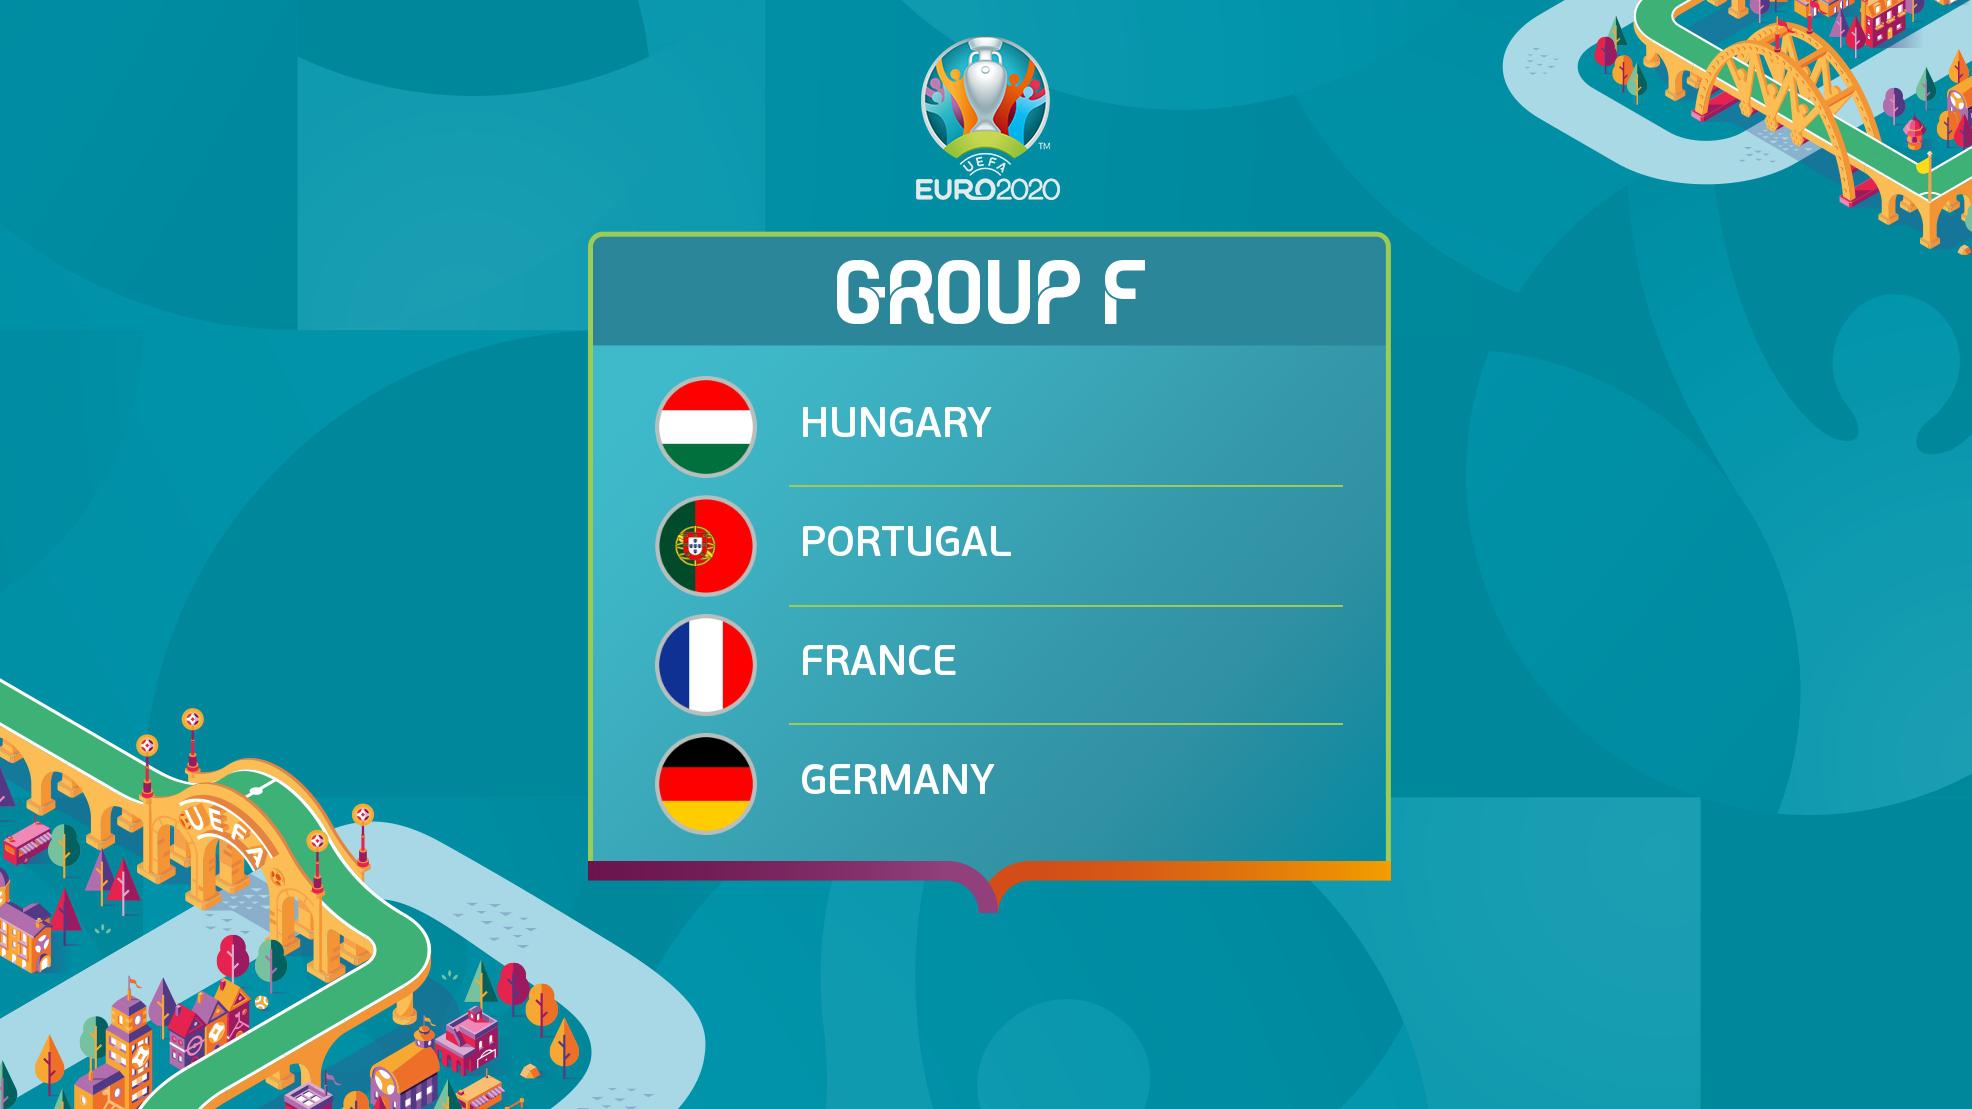 Đã Hiểu Tại Sao Gọi Là Bảng Tử Thần Khét Tiếng Euro 2020, Vì Nguyên Team  Pháp, Đức, Hung, Bồ Dắt Nhau Đi Về Hết!